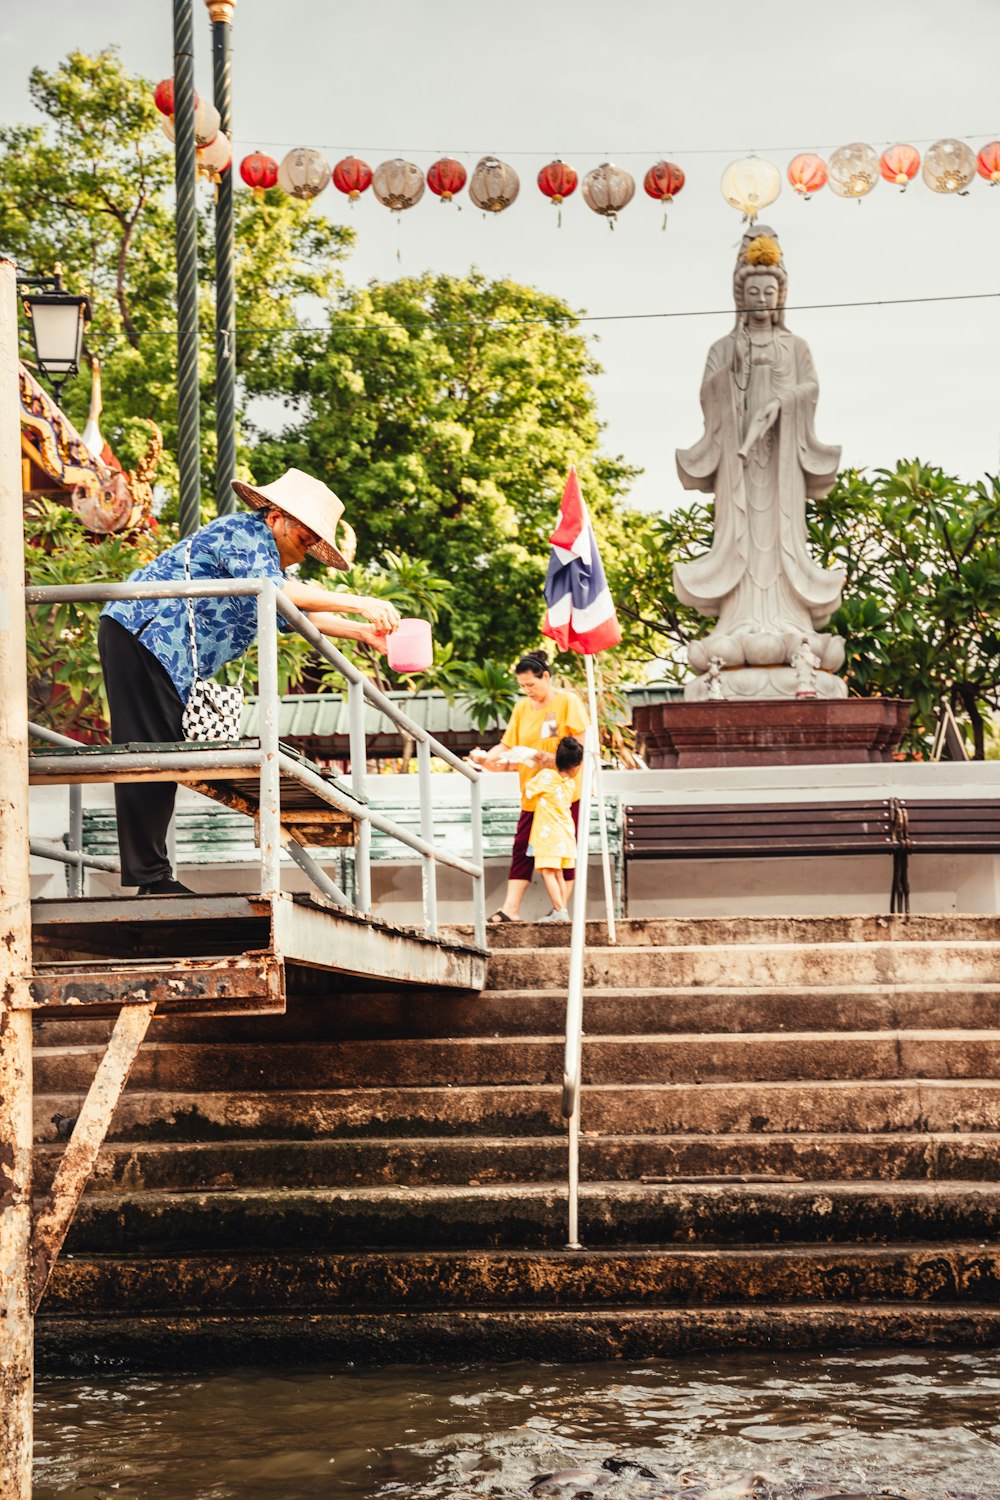 Un hombre parado en un conjunto de escaleras junto a una estatua